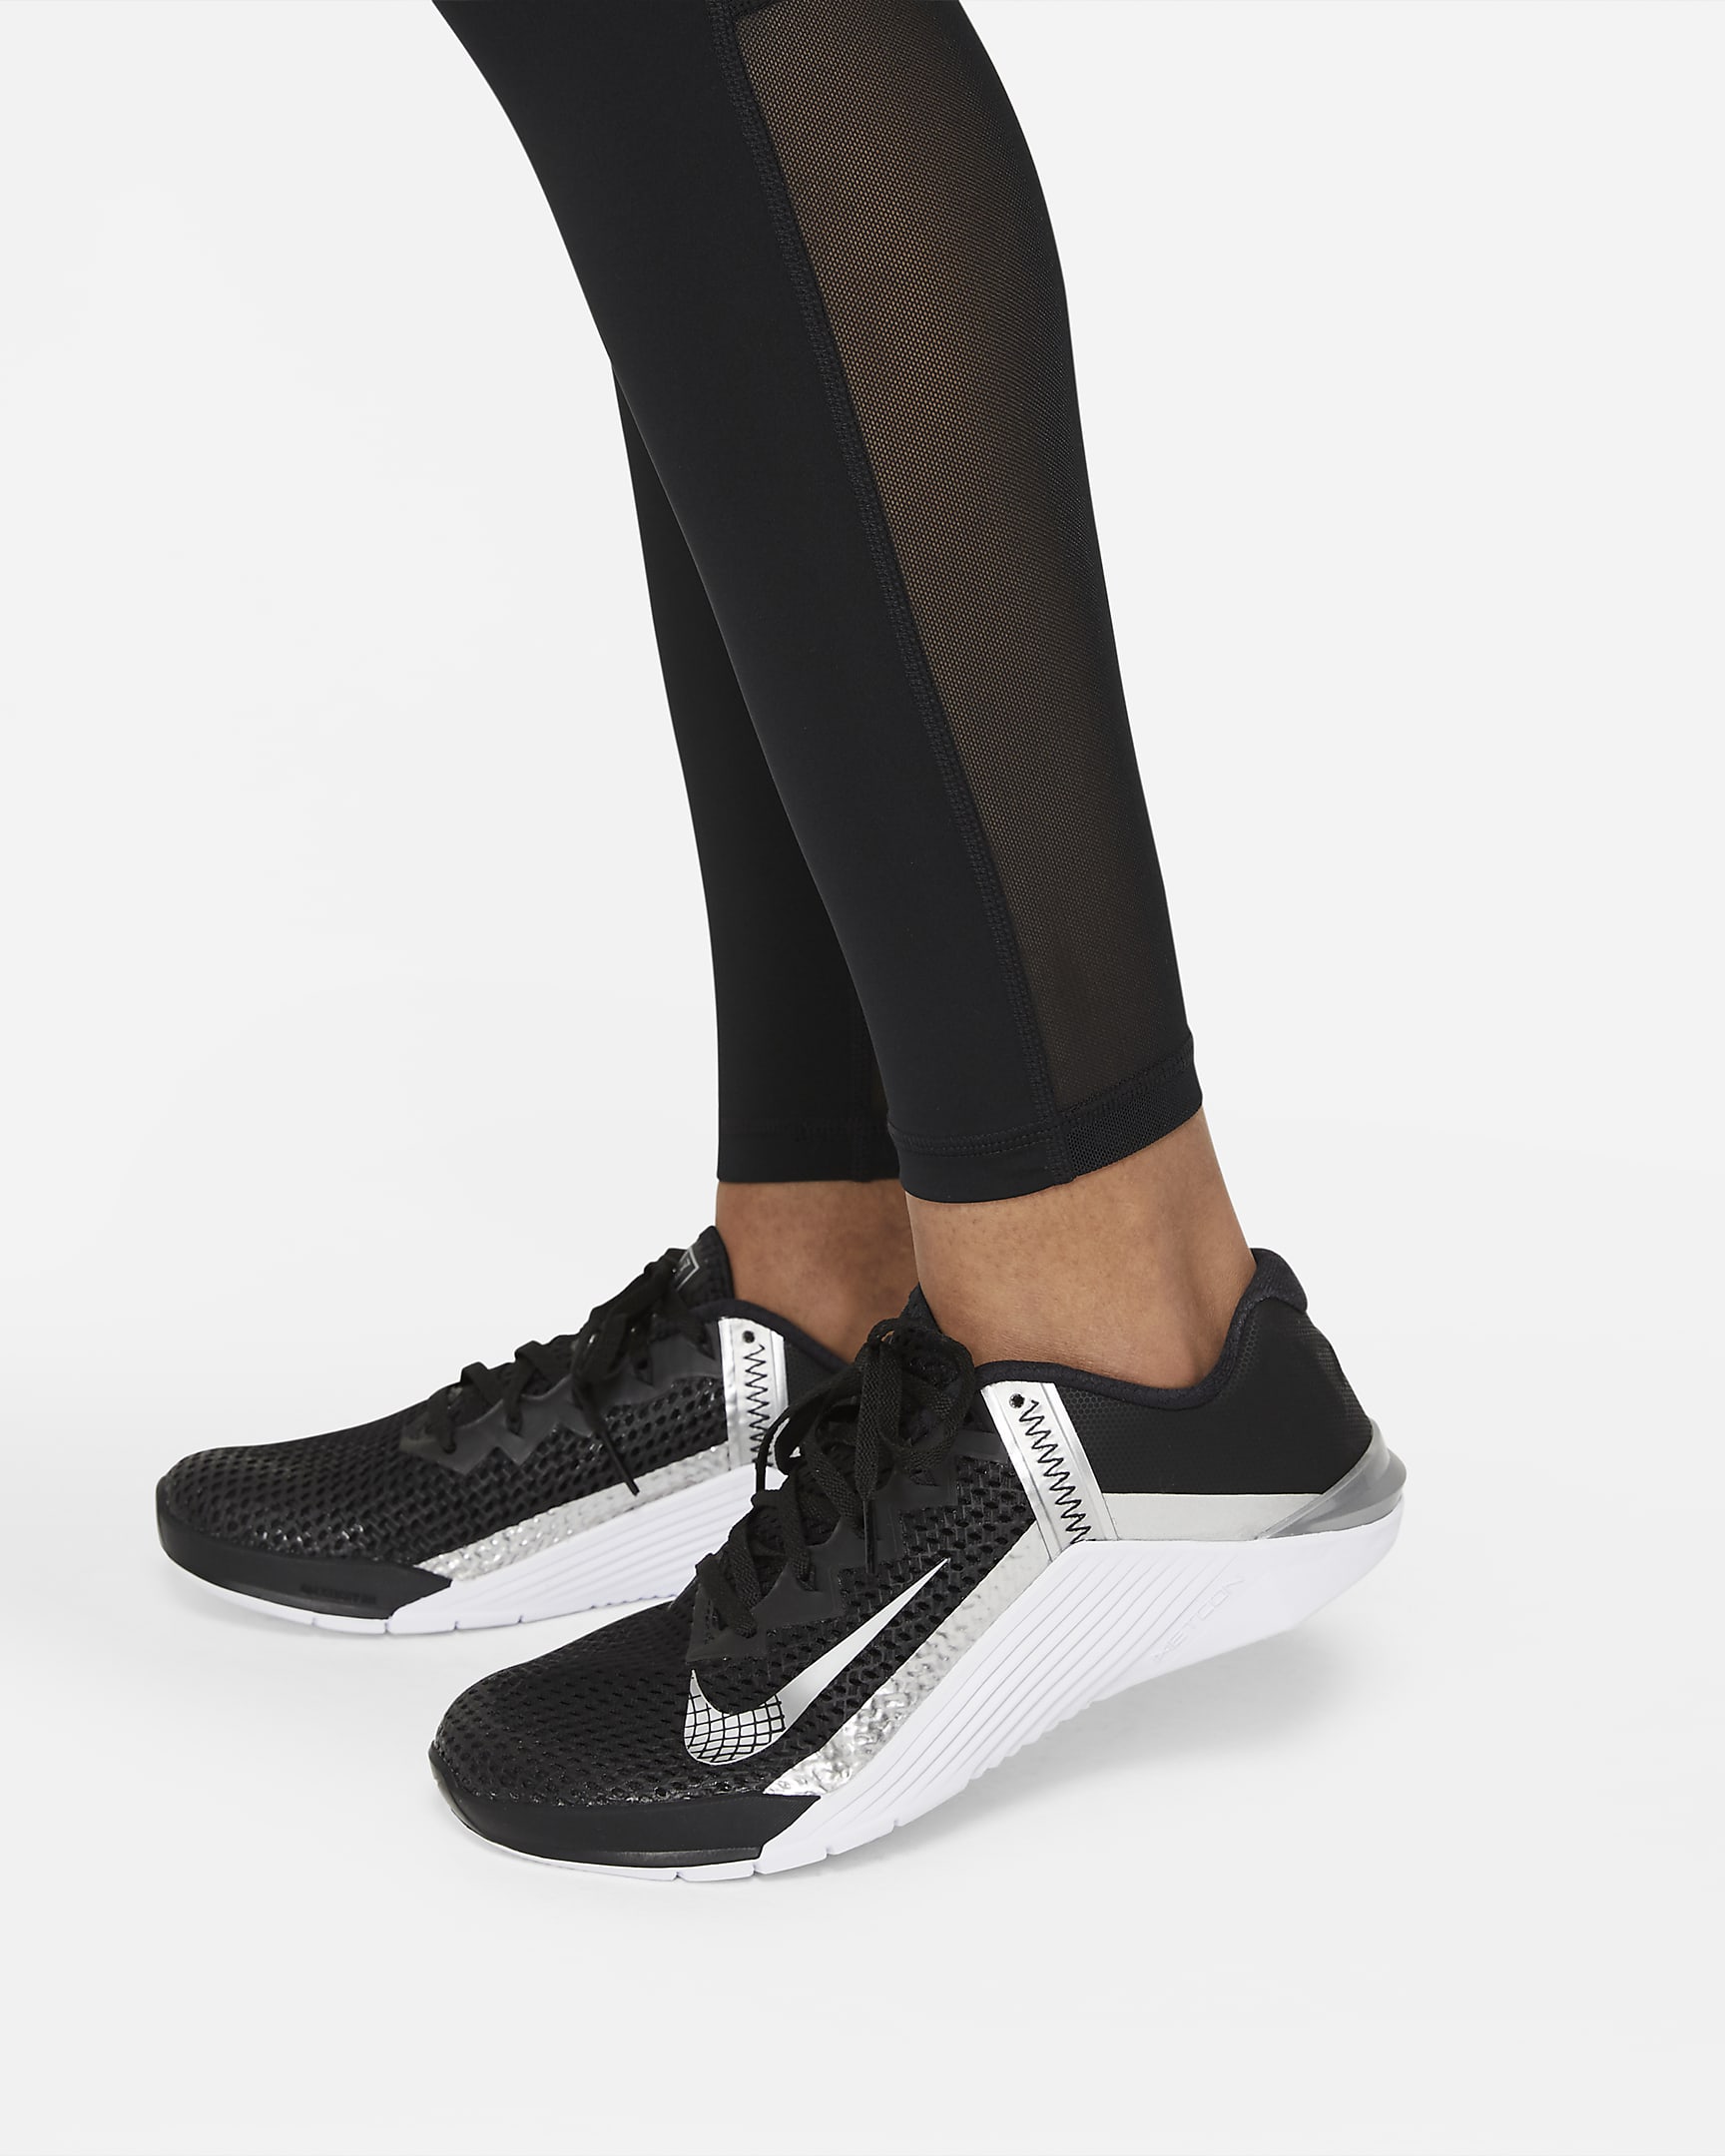 Nike Pro Leggings mit mittelhohem Bund und Mesh-Einsatz für Damen - Schwarz/Weiß